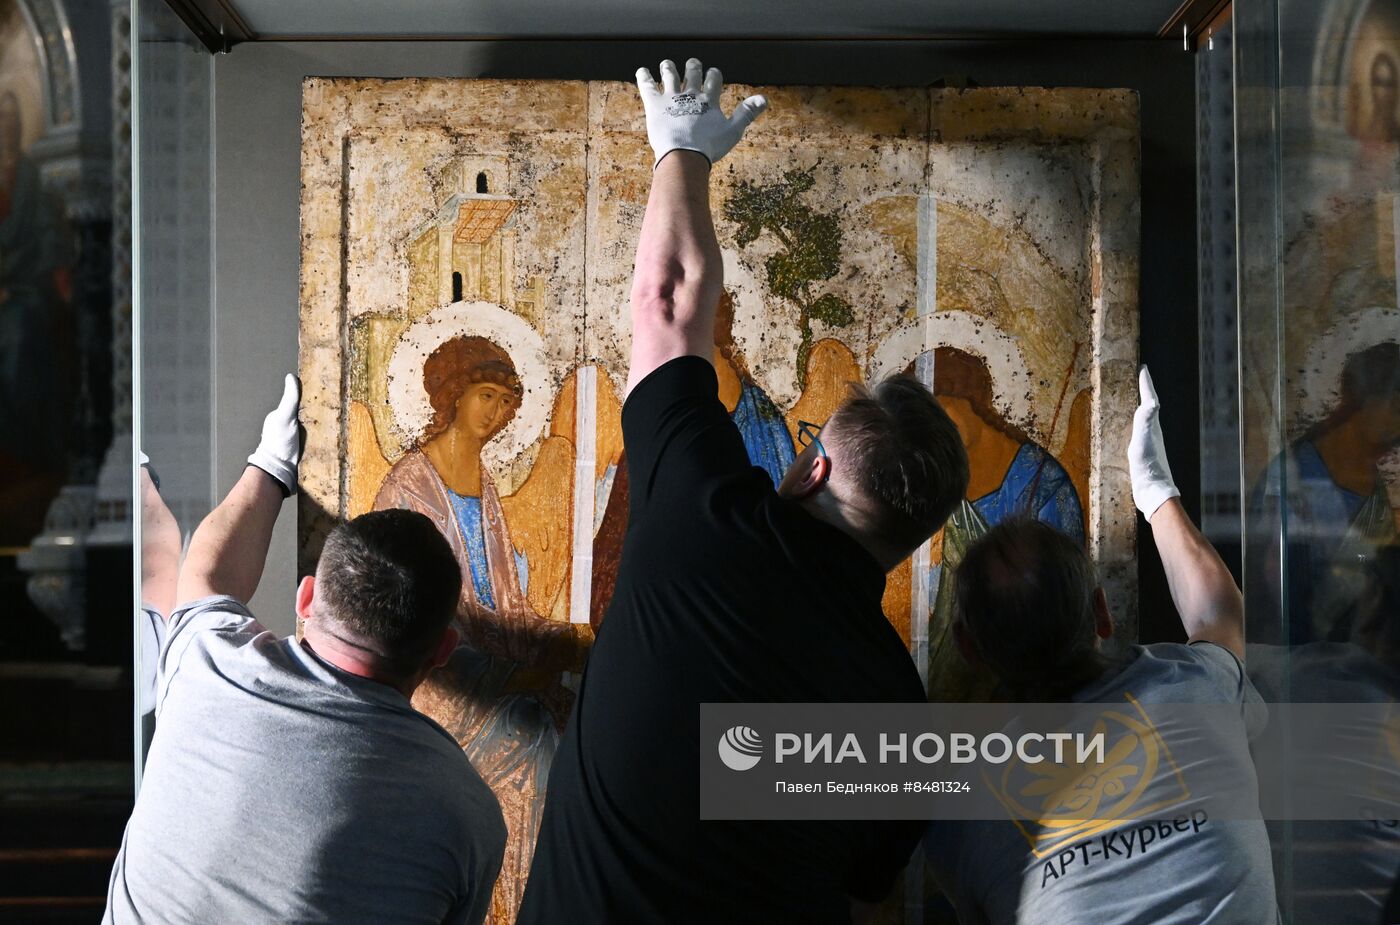 Прибытие иконы А. Рублева "Троица" в реставрационный центр им. Грабаря